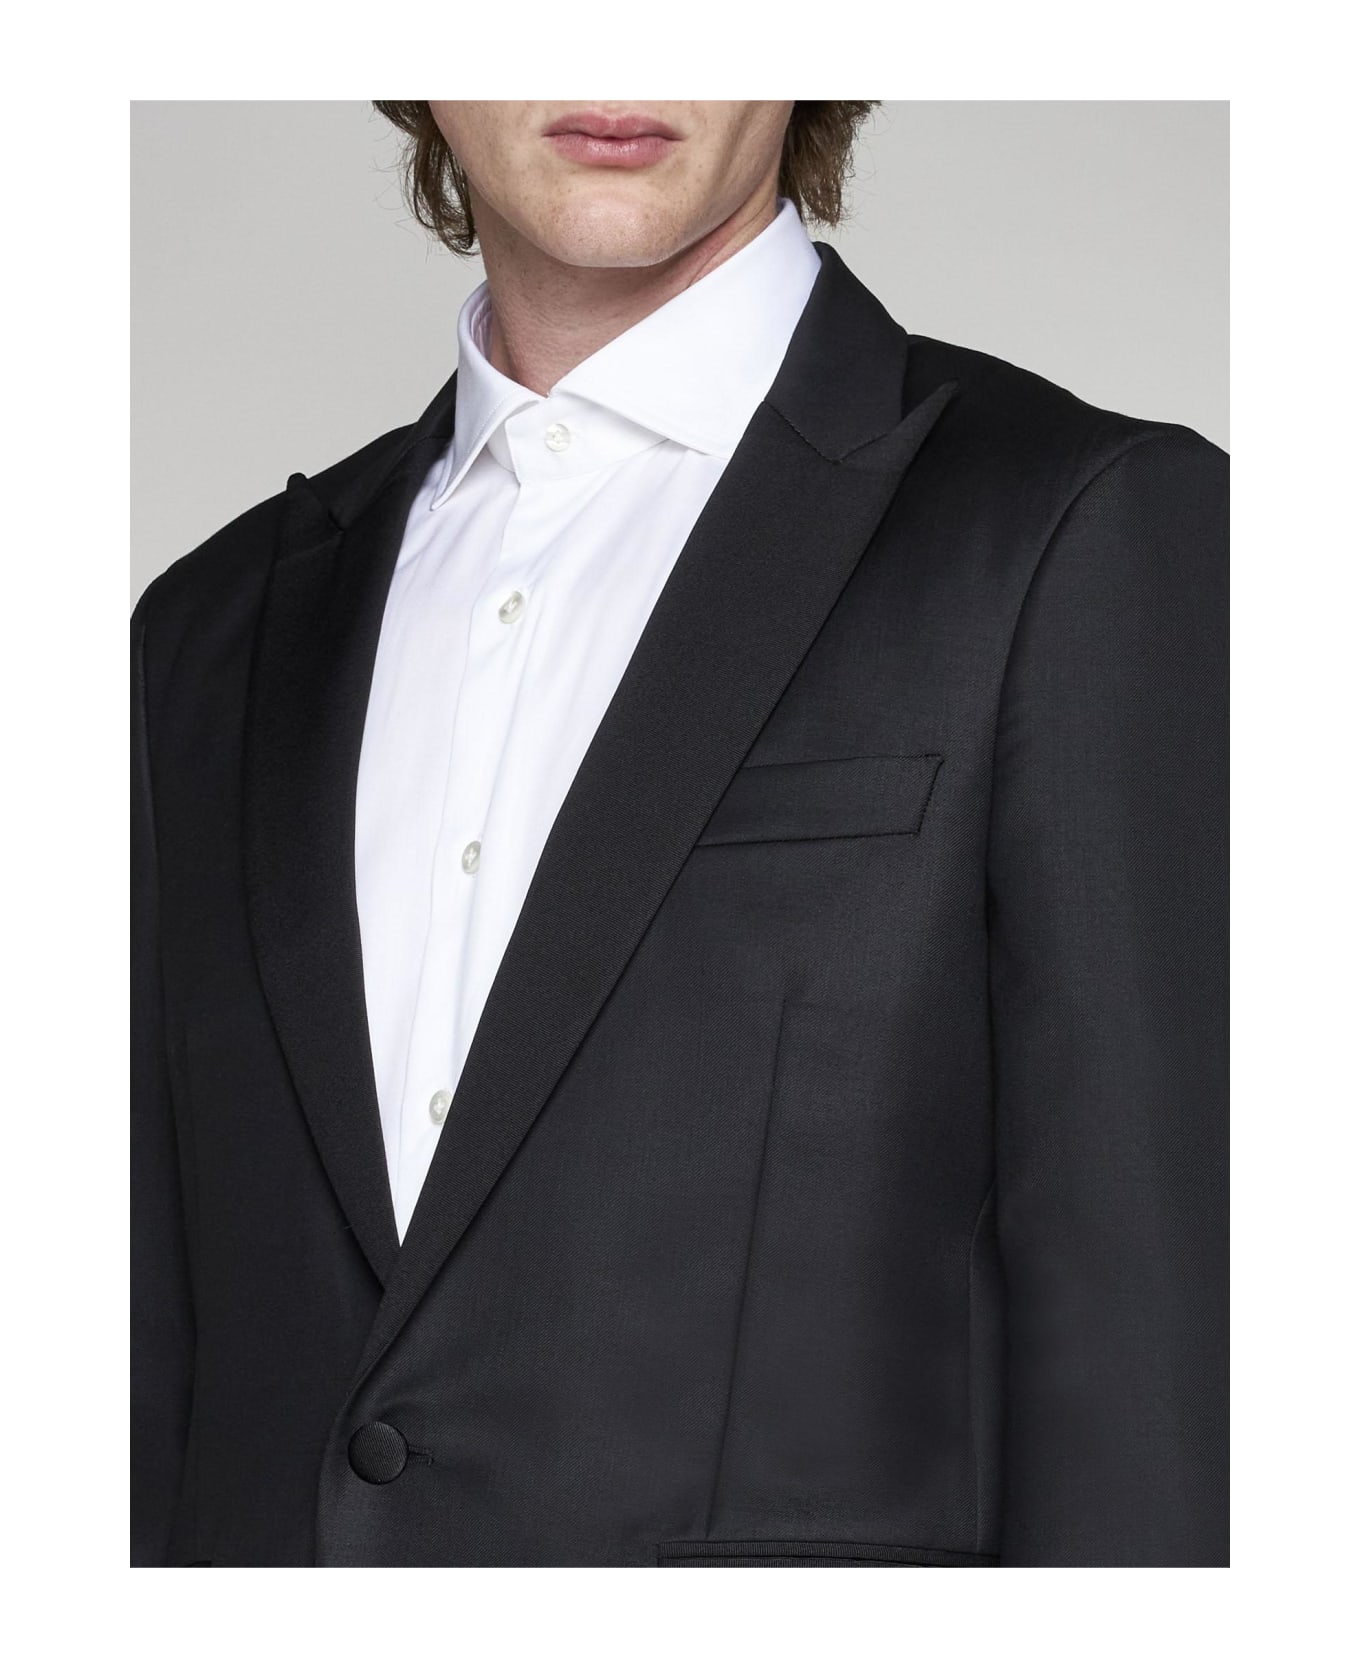 PT Torino Wool-blend Tuxedo - BLACK スーツ